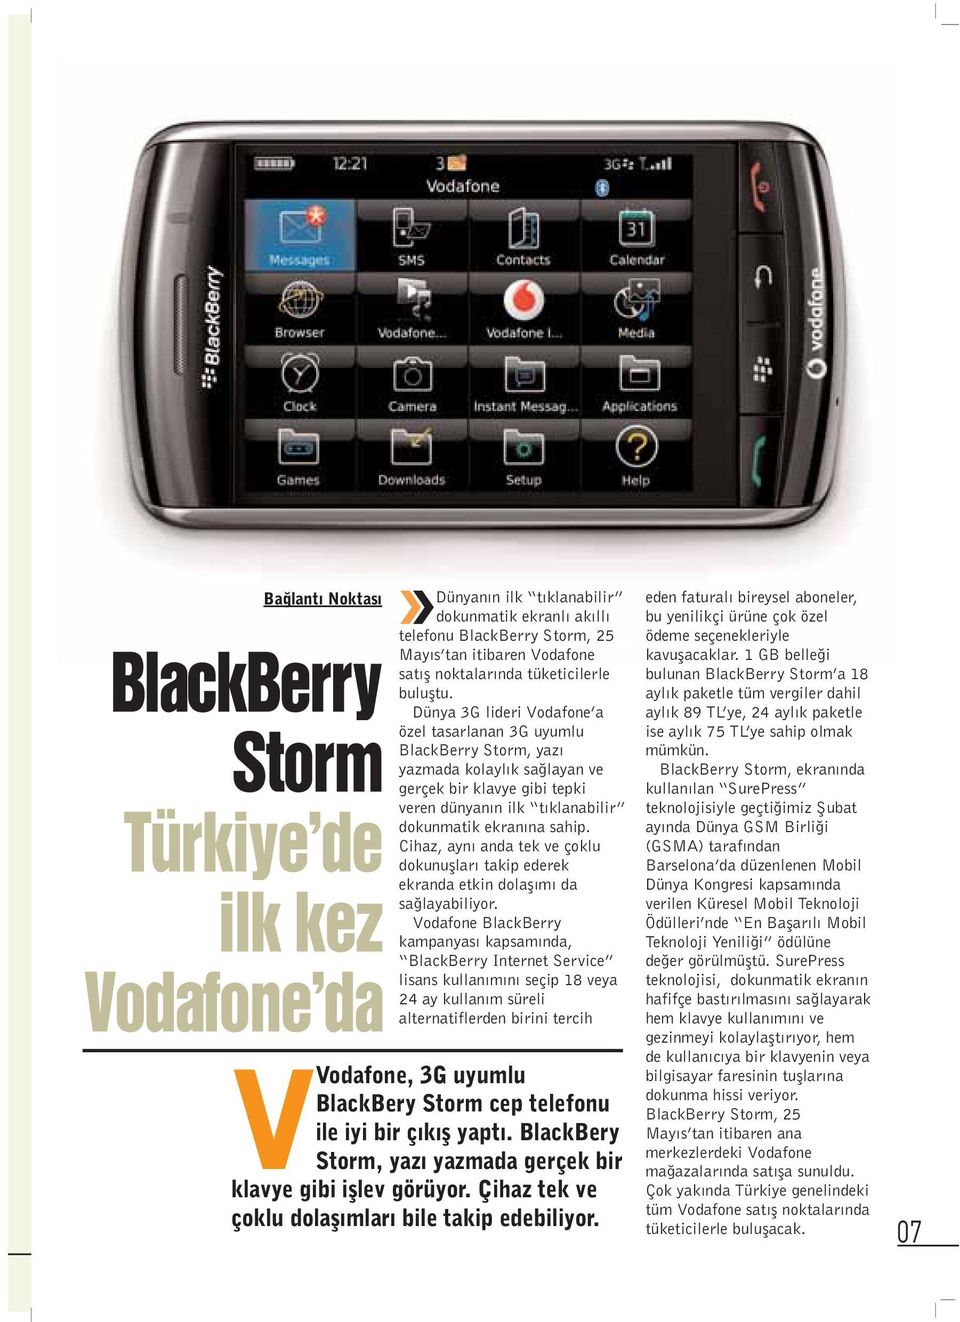 Dünya 3G lideri Vodafone a özel tasarlanan 3G uyumlu BlackBerry Storm, yaz yazmada kolayl k sa layan ve gerçek bir klavye gibi tepki veren dünyan n ilk t klanabilir dokunmatik ekran na sahip.